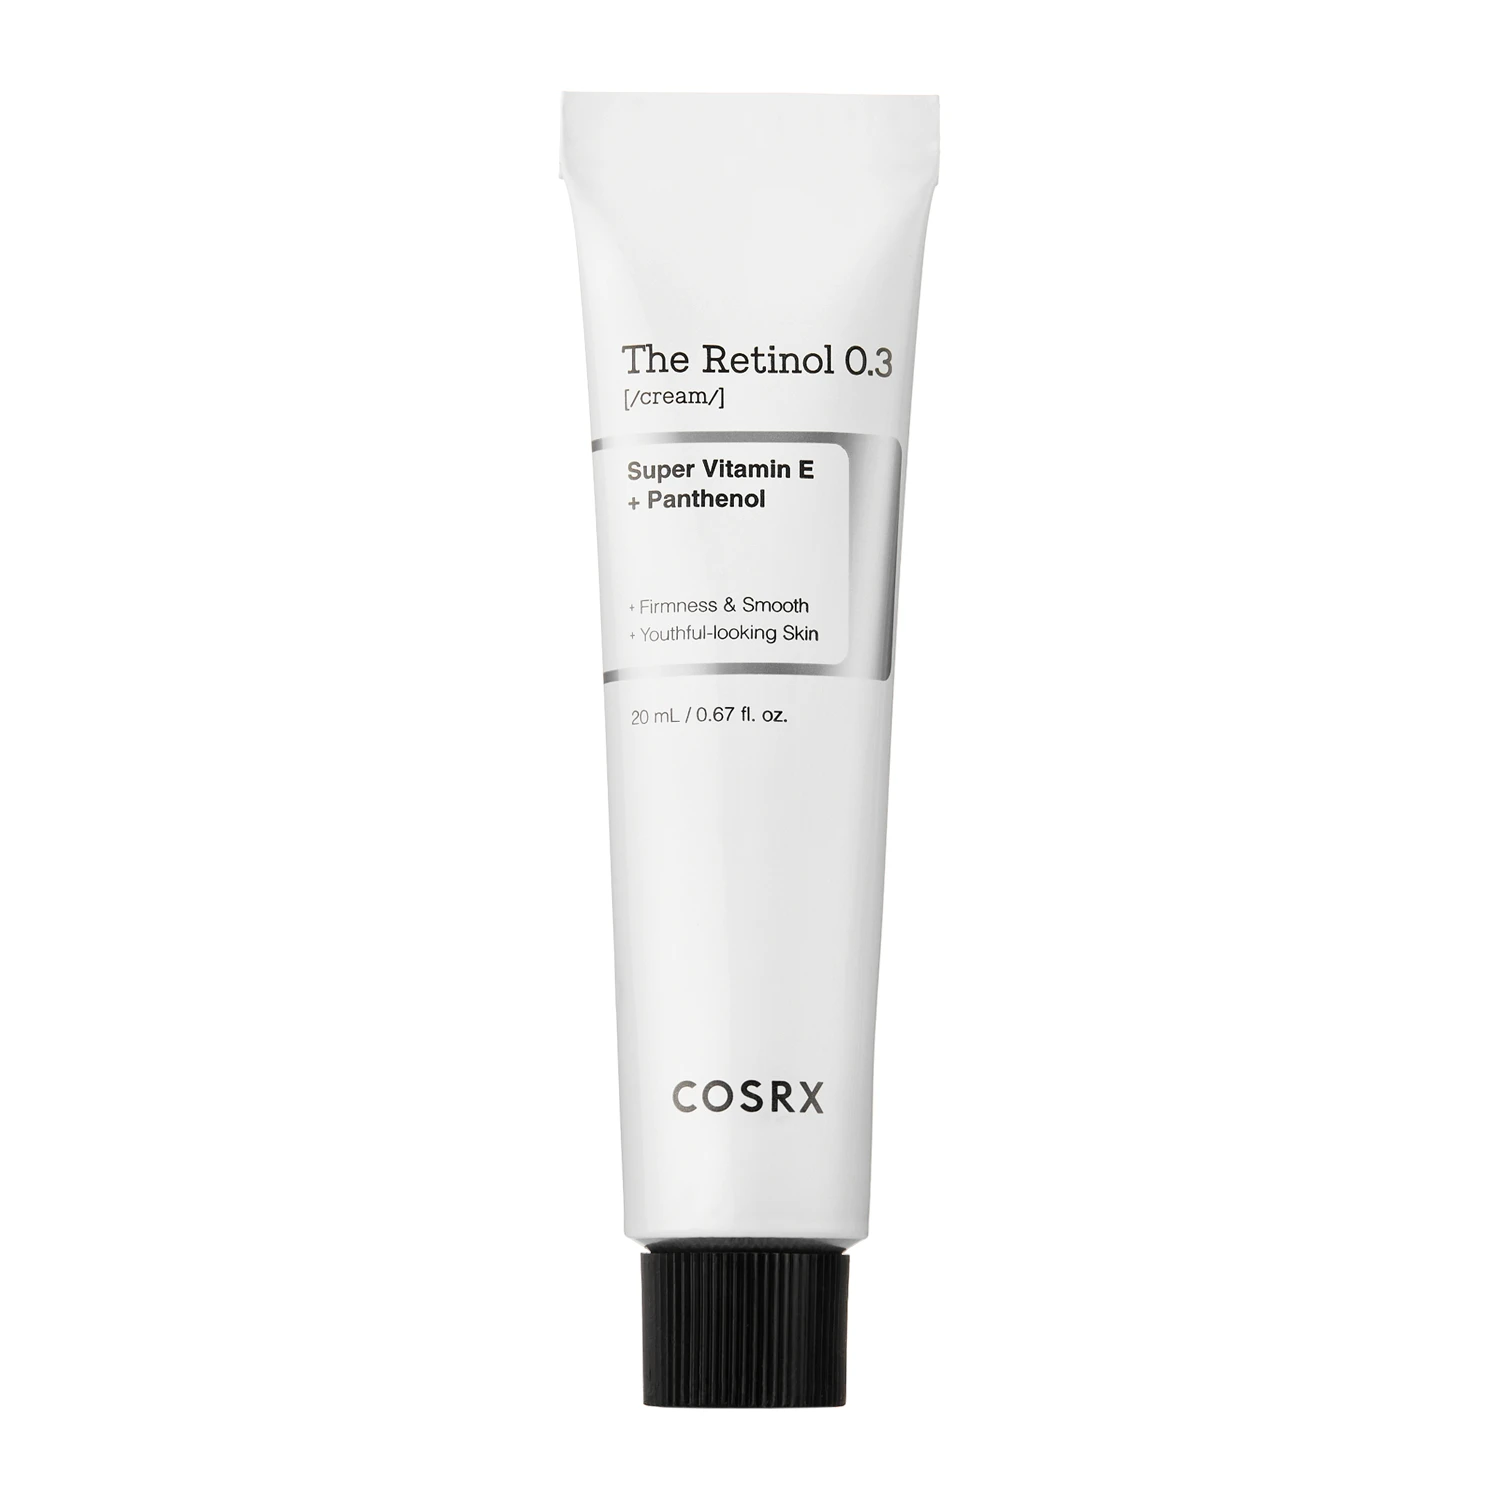 COSRX - The Retinol 0.3 Cream - Крем для лица с ретинолом 0,3% - 20ml